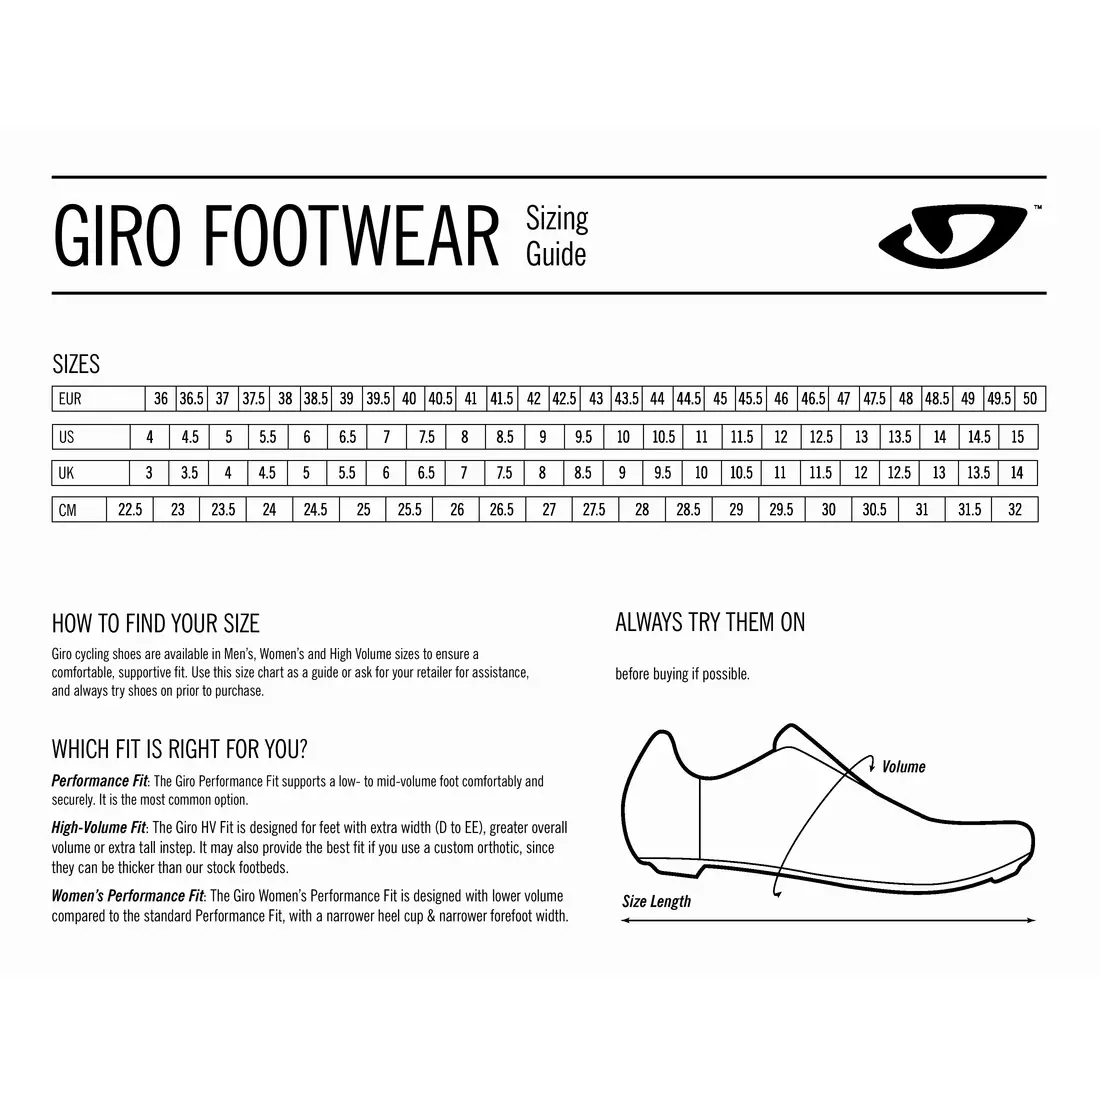 GIRO pánská cyklistická obuv CADET white GR-7123088